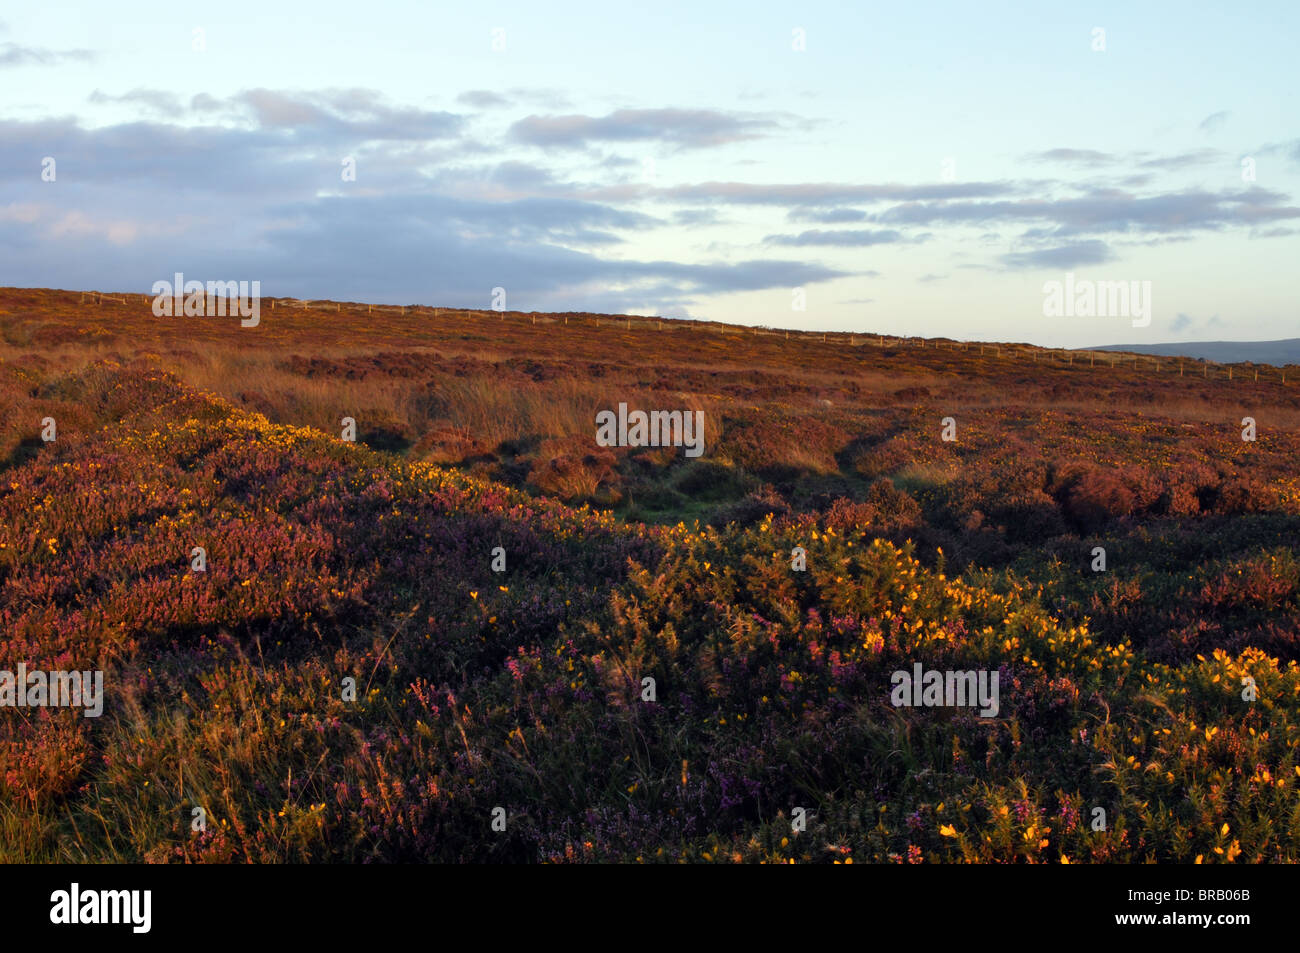 Heather rose et jaune l'ajonc, coucher de soleil, Carningli, Commun Preselli Hills, Newport, Pembrokeshire, Pays de Galles, Royaume-Uni Banque D'Images